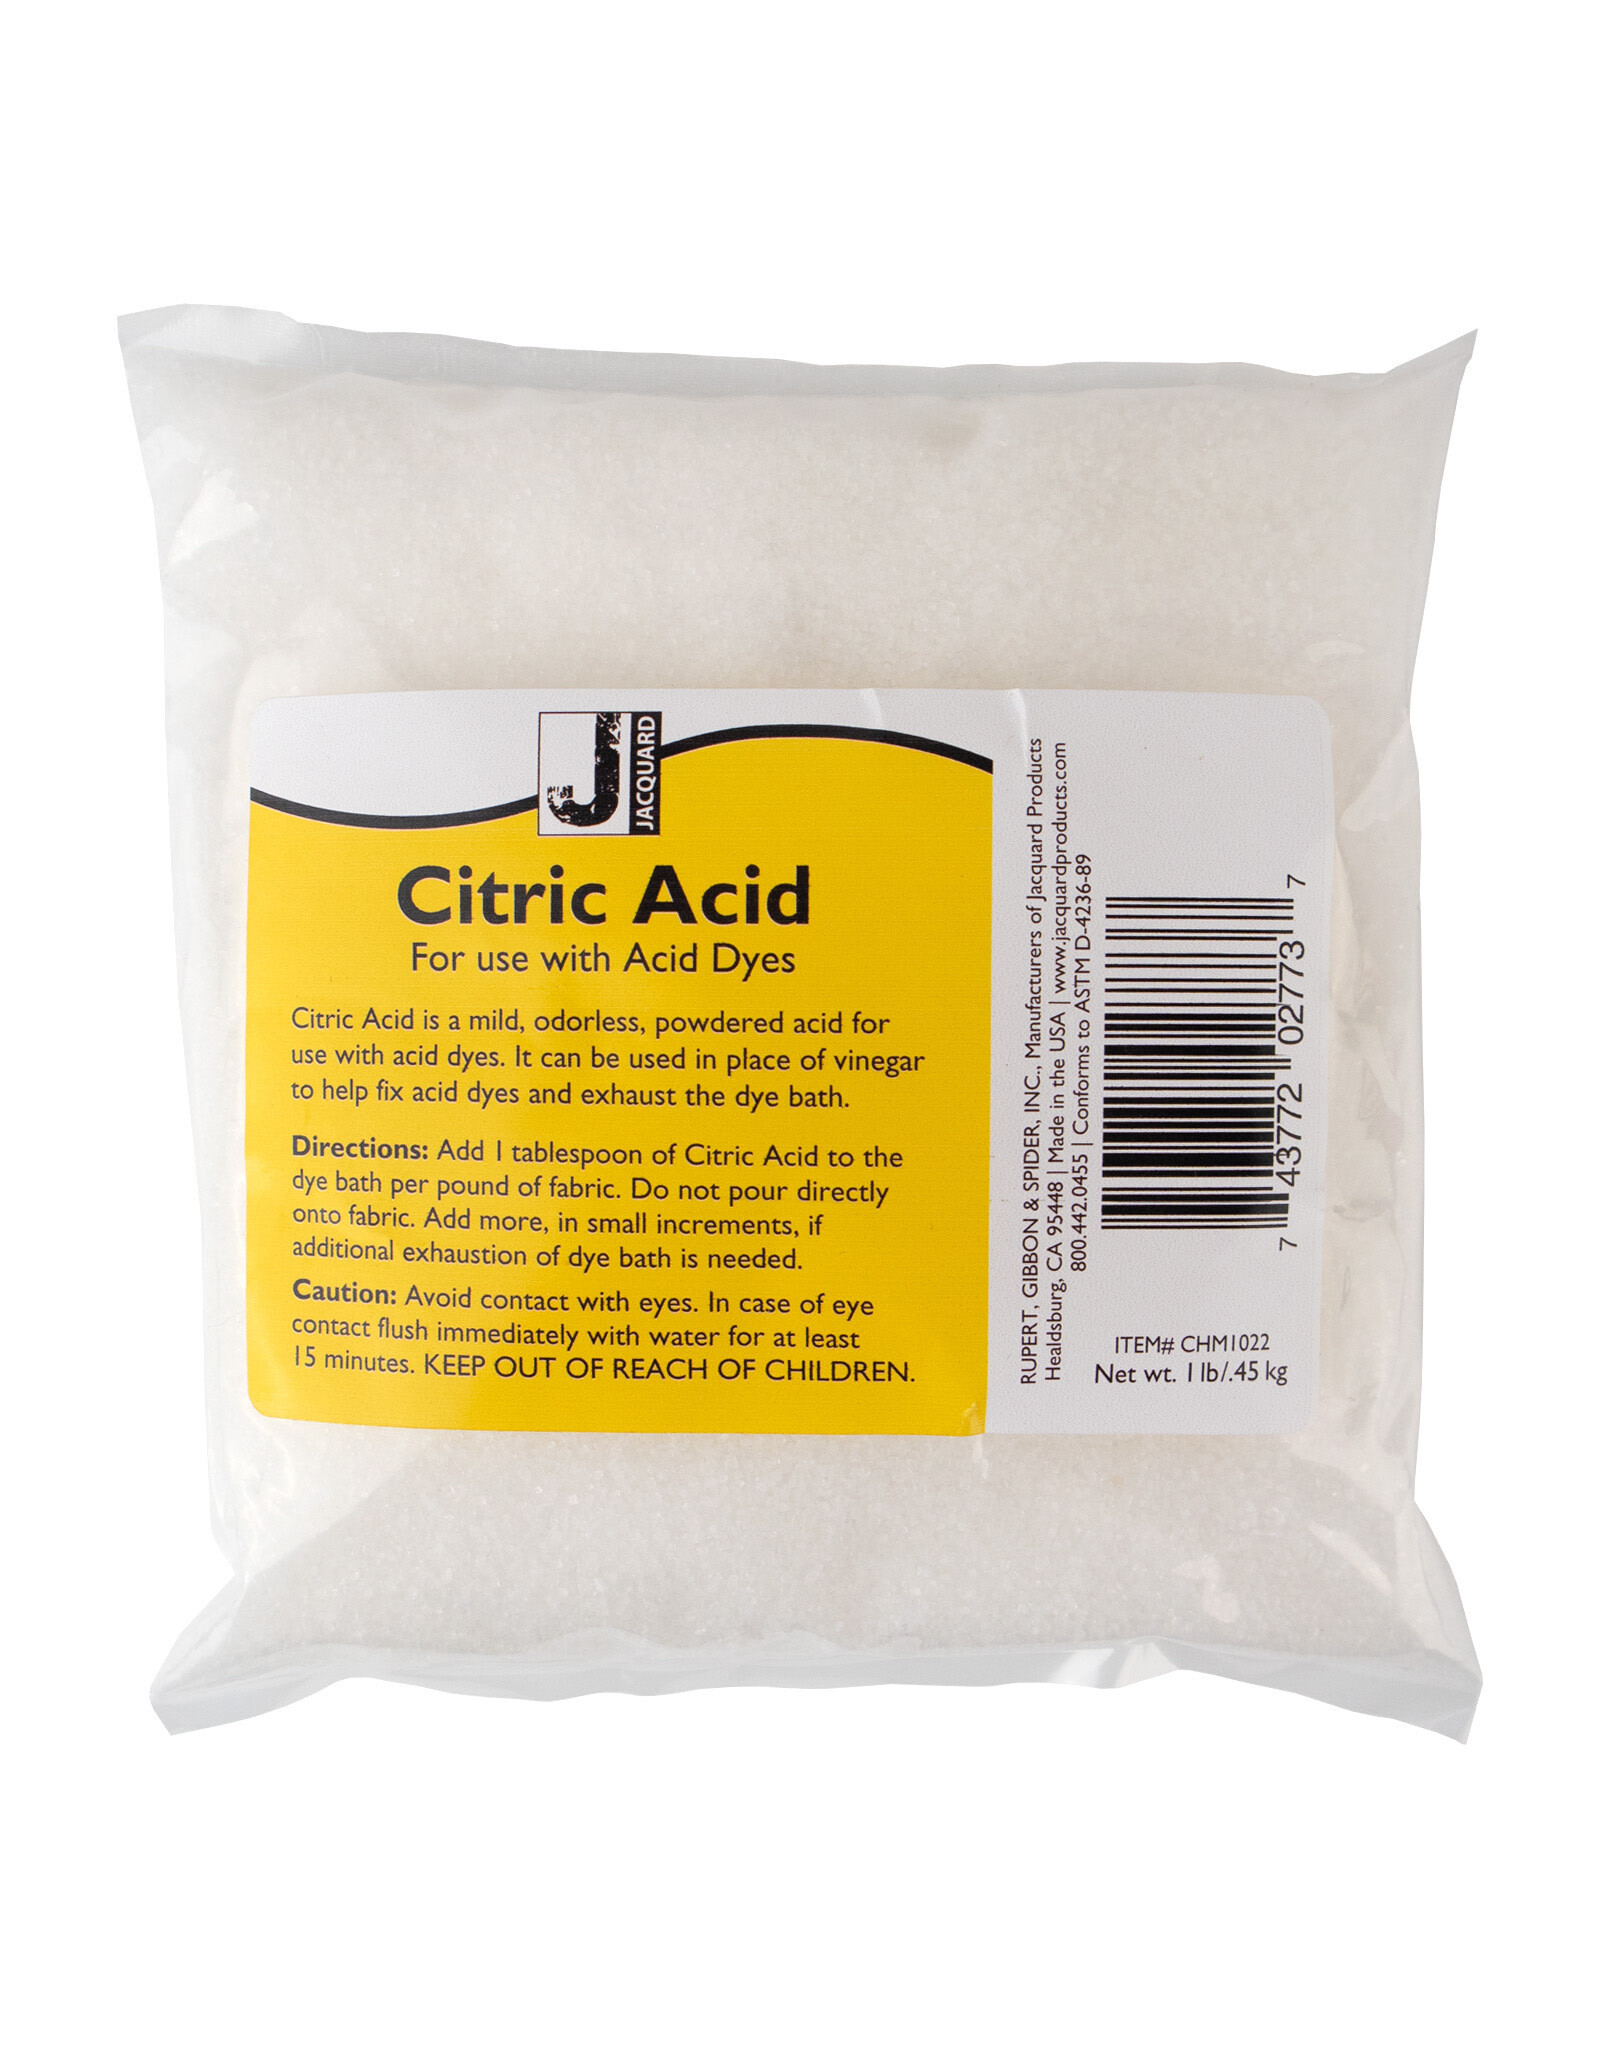 Jacquard Jacquard Citric Acid, 1lb